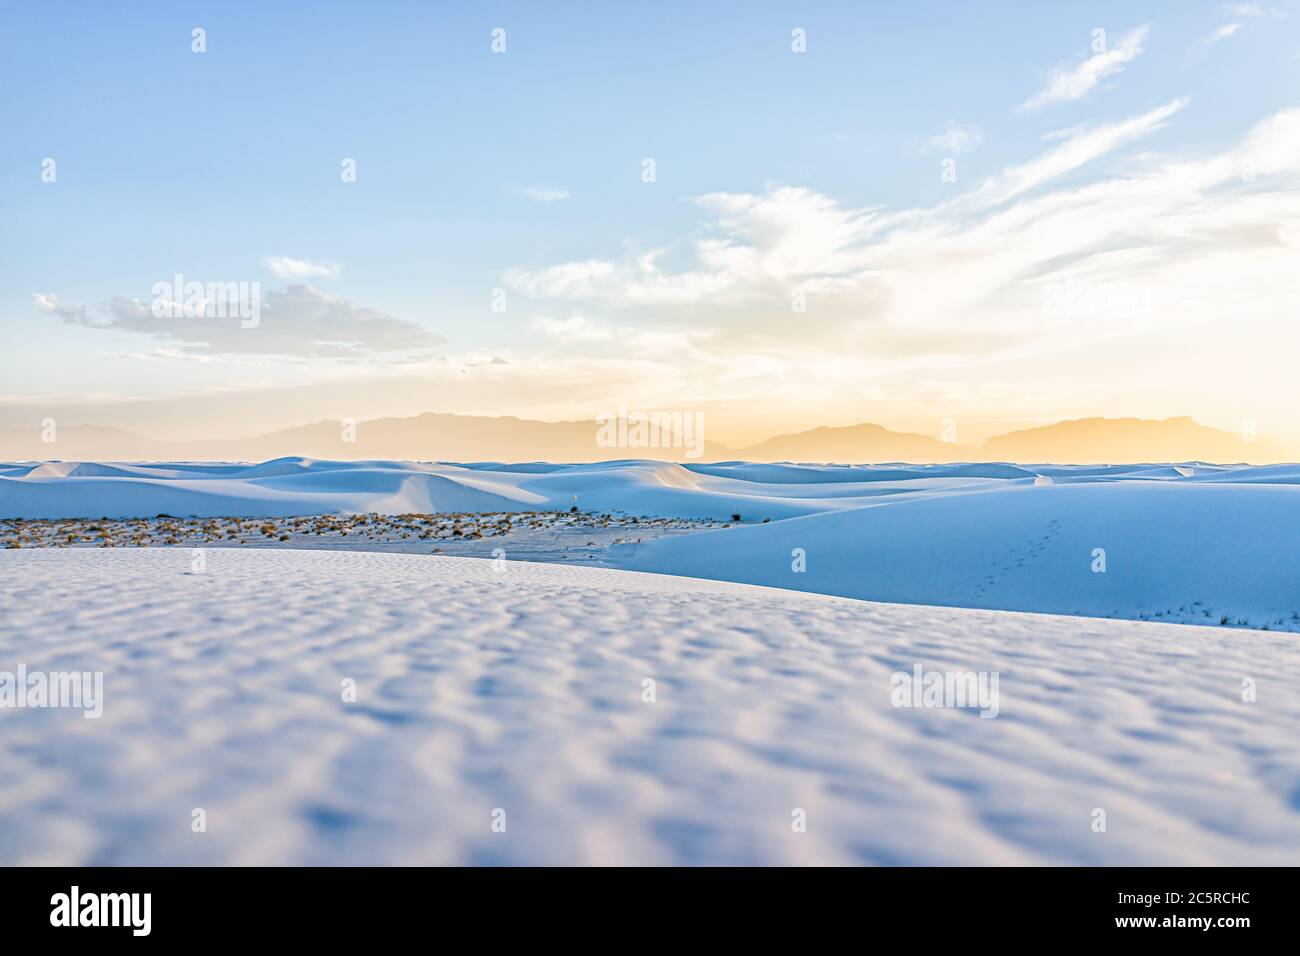 Dunes de sable blanc parc national monument collines de sable de gypse au Nouveau-Mexique avec la silhouette des montagnes d'orgue à l'horizon pendant le coucher de soleil jaune coloré Banque D'Images